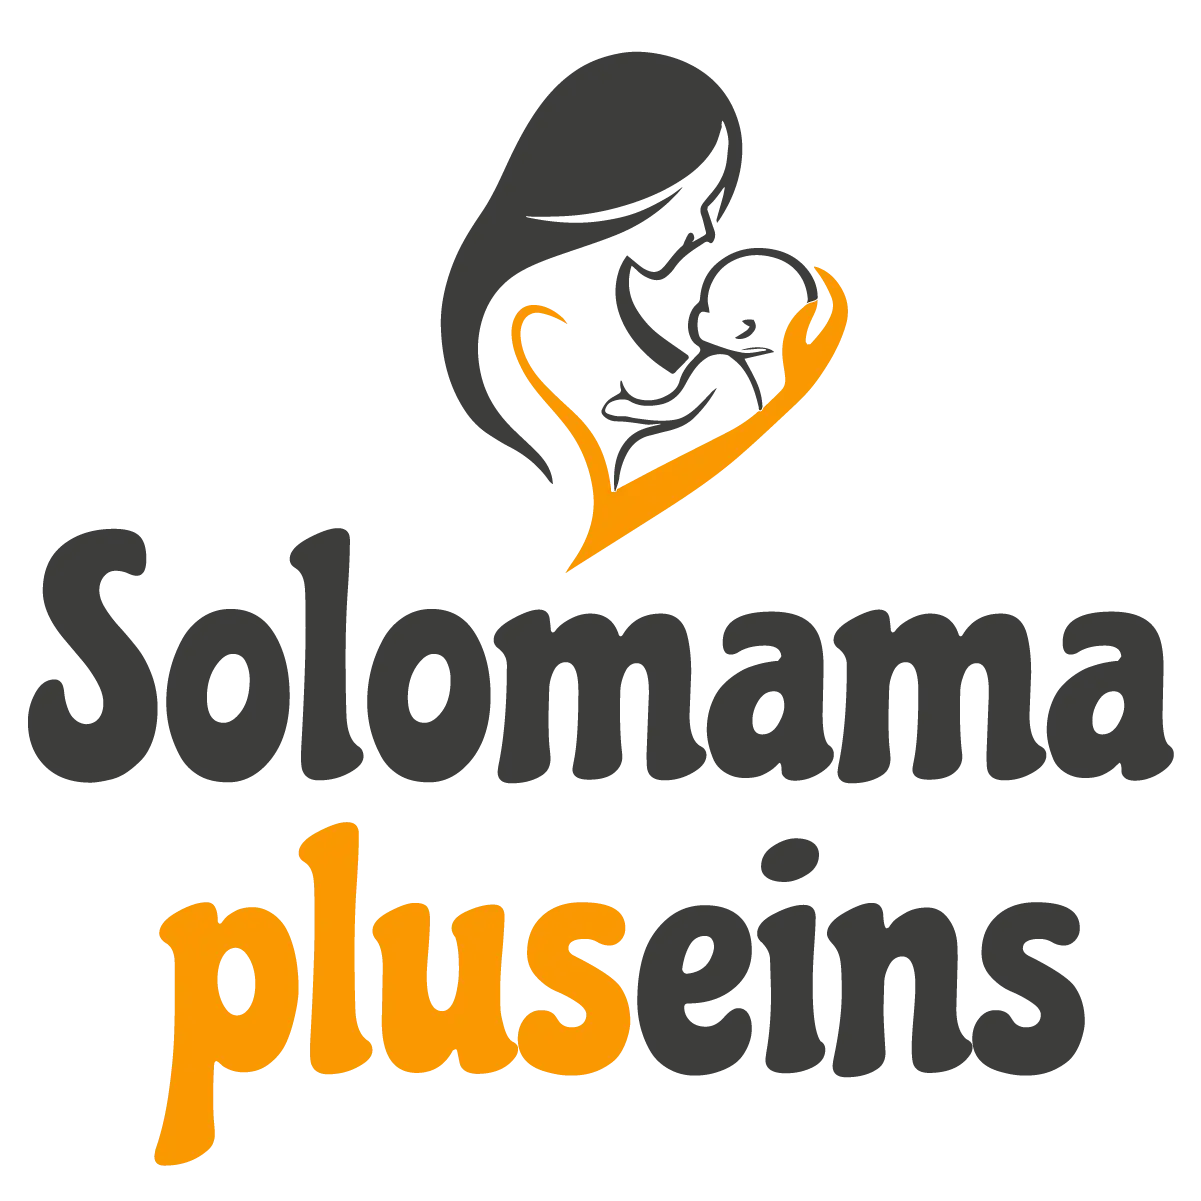 Das Bild zeigt ein Logo mit dem Text „solomama pluseins“ in stilisierter schwarzer Schrift. Über dem Text befindet sich eine illustrierte orangefarbene Grafik einer erwachsenen Figur, die ein Baby wiegt.